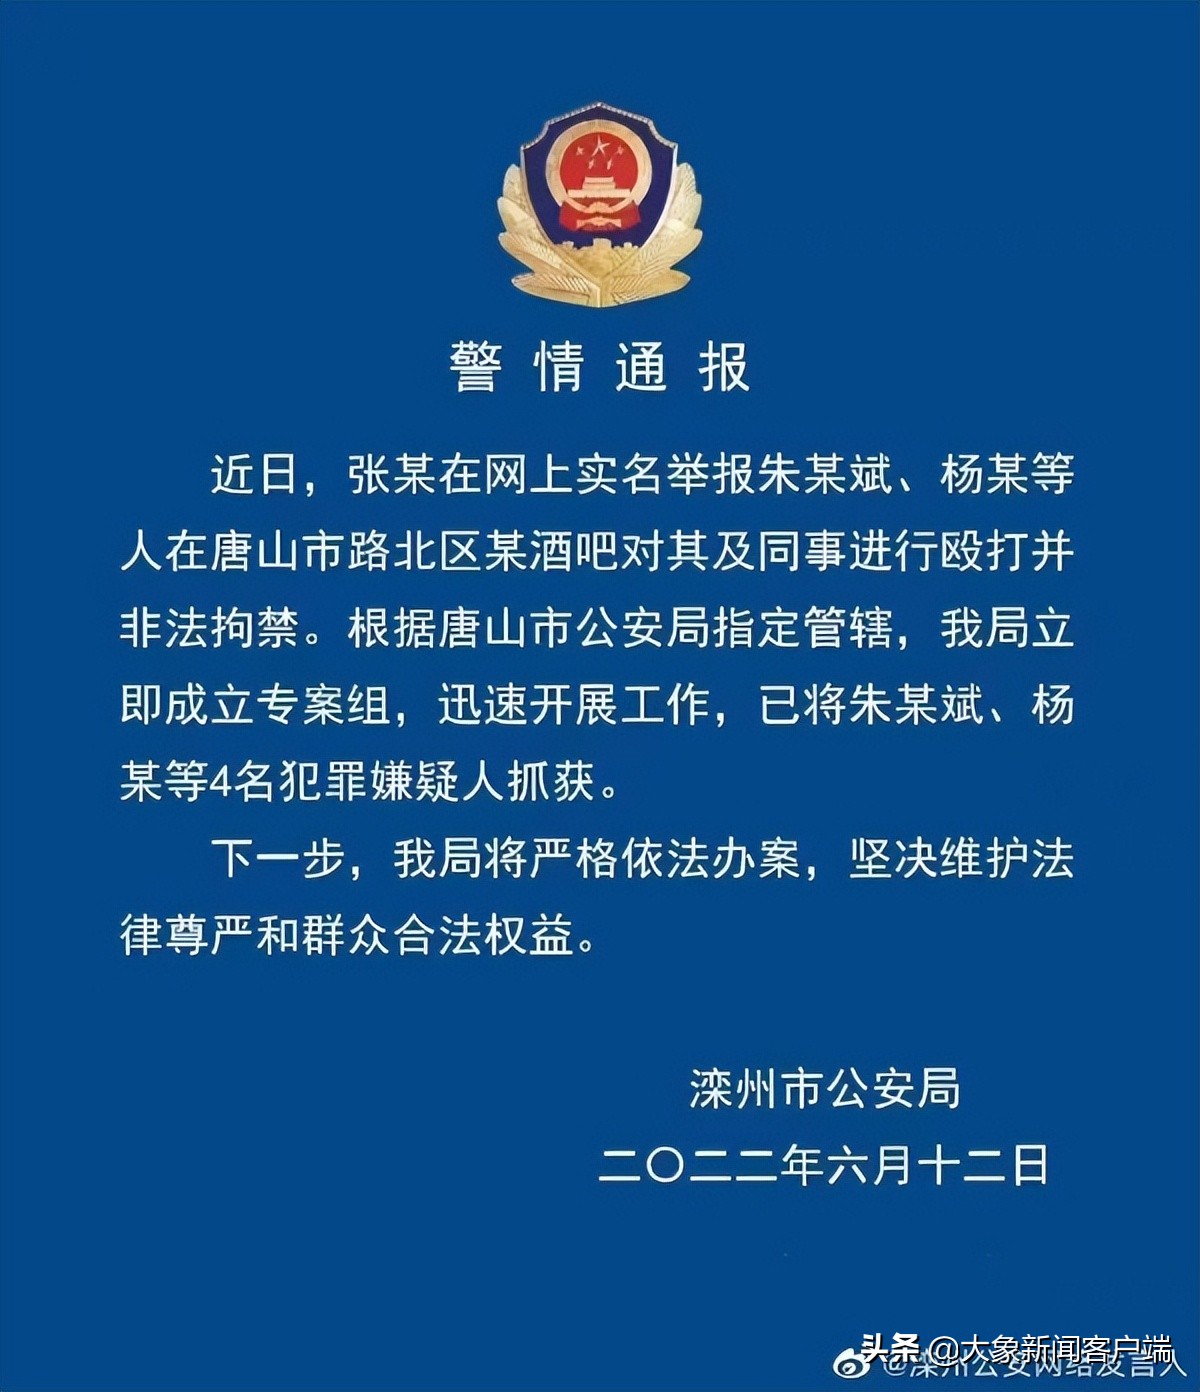 唐山酒吧女子被殴打非法拘禁案由滦州公安侦办，4名嫌疑人被抓获